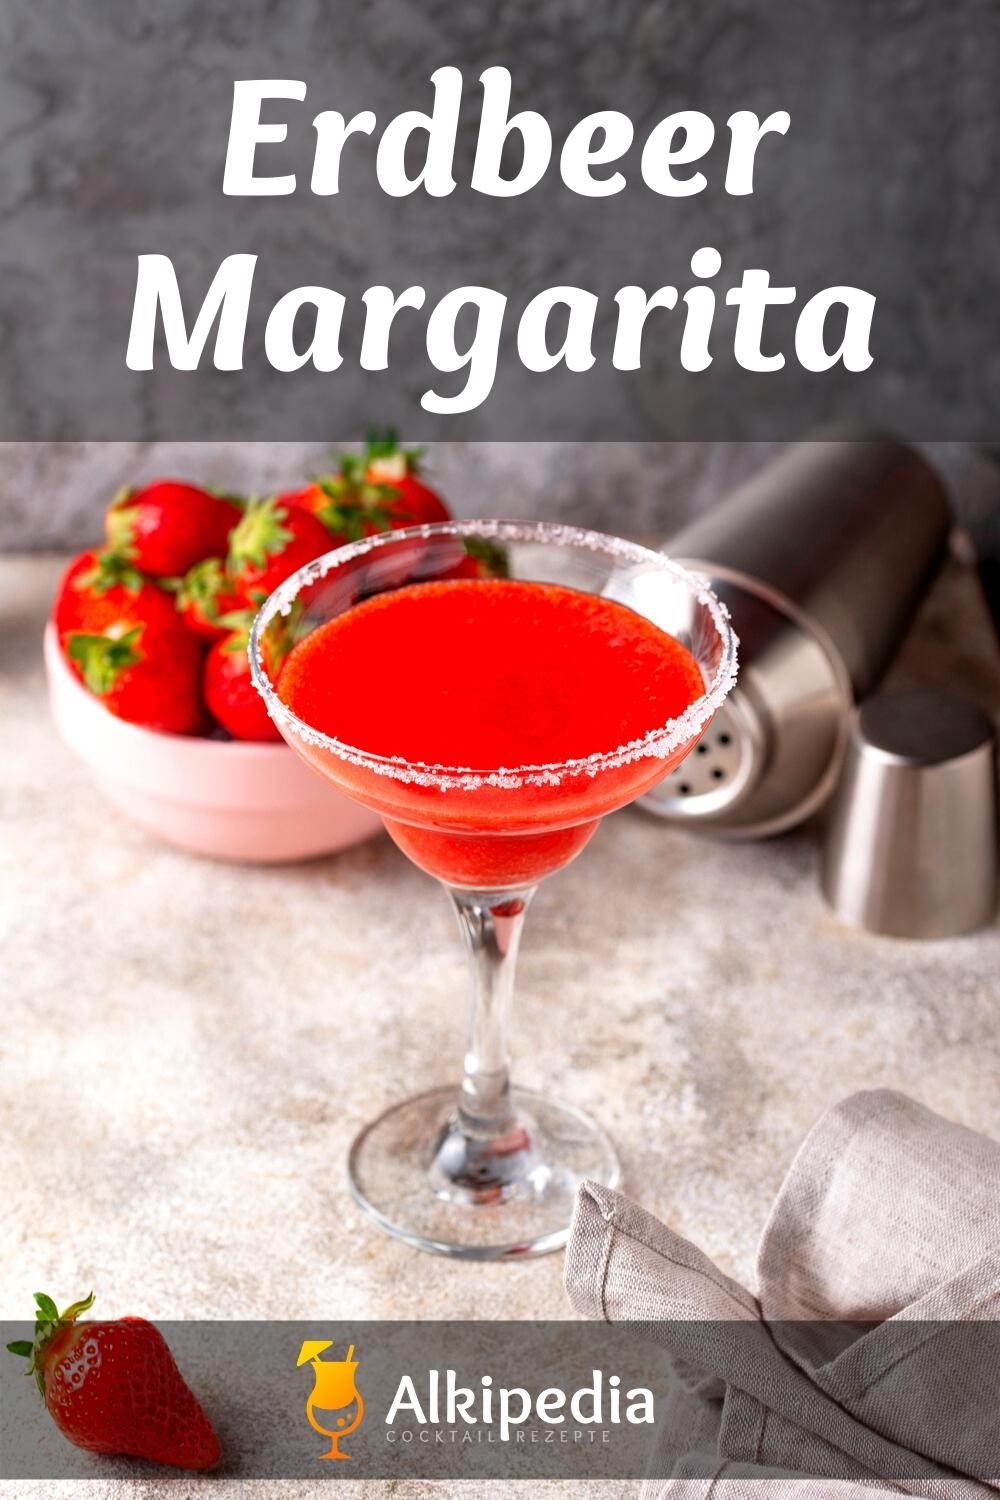 Erdbeer Margarita - Der perfekt erfrischende Sommerdrink